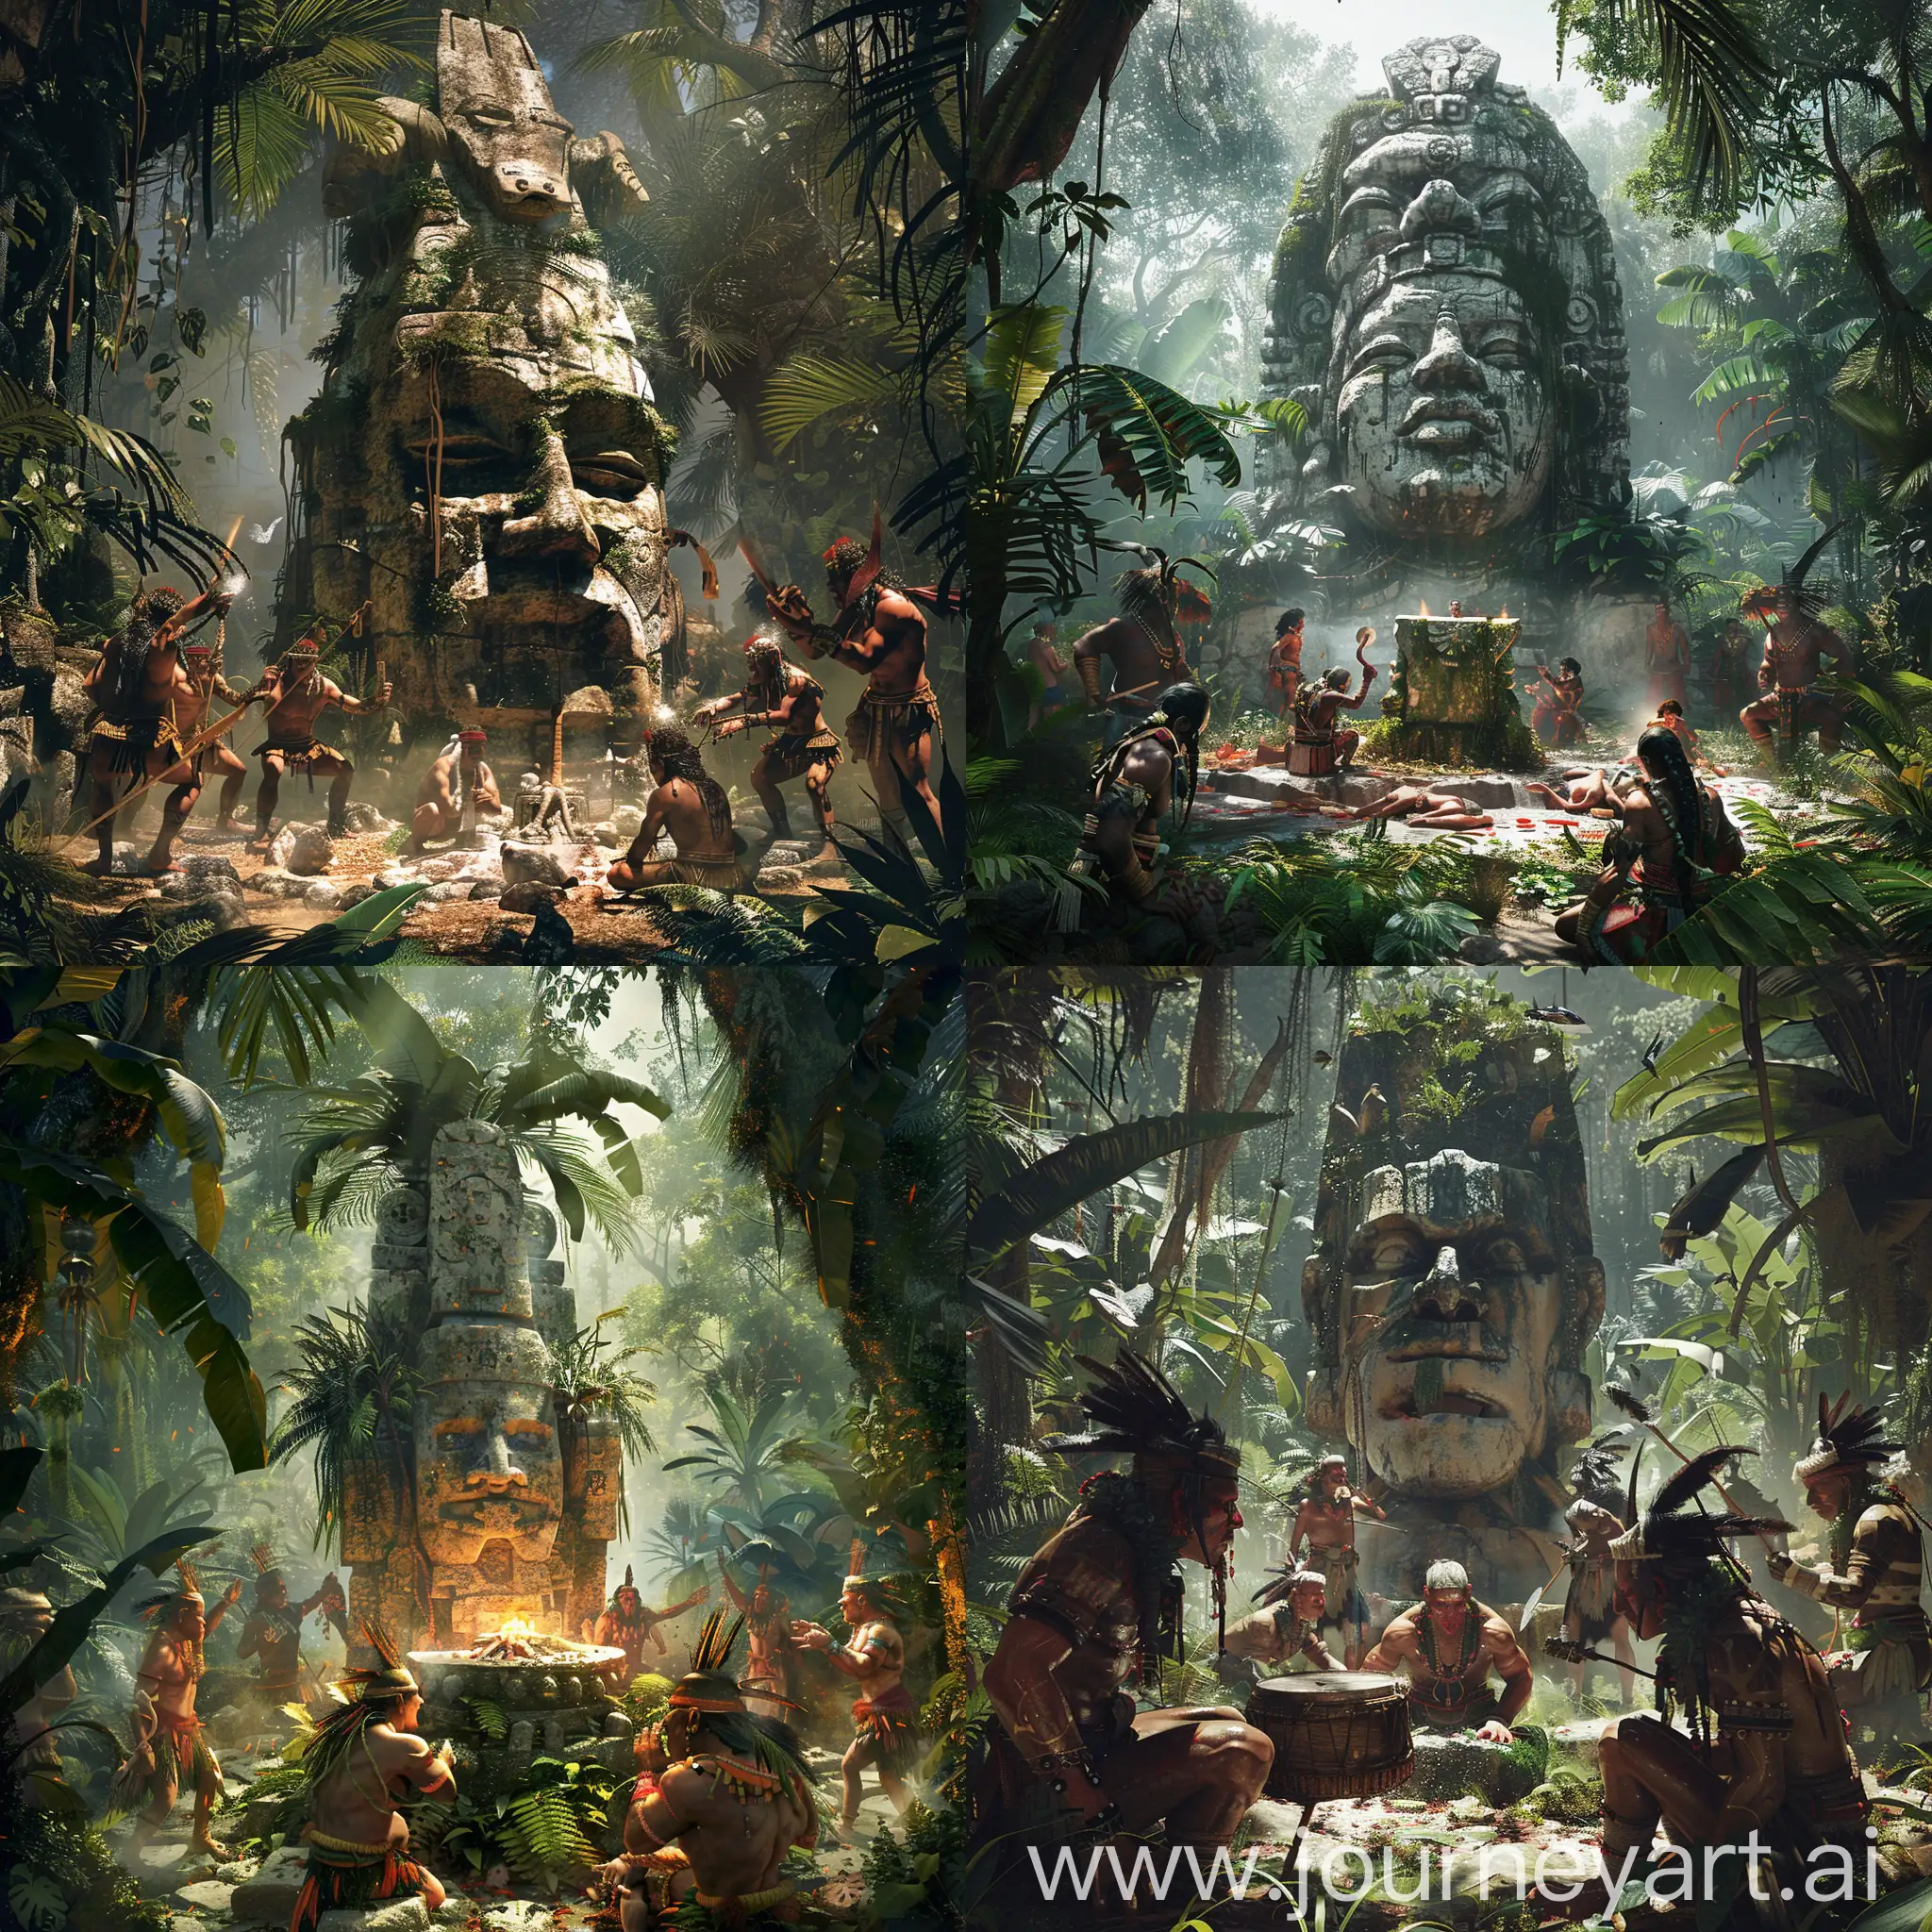 Jungle-Tribe-Worshiping-Stone-Idol-in-Savage-Ritual-Dance